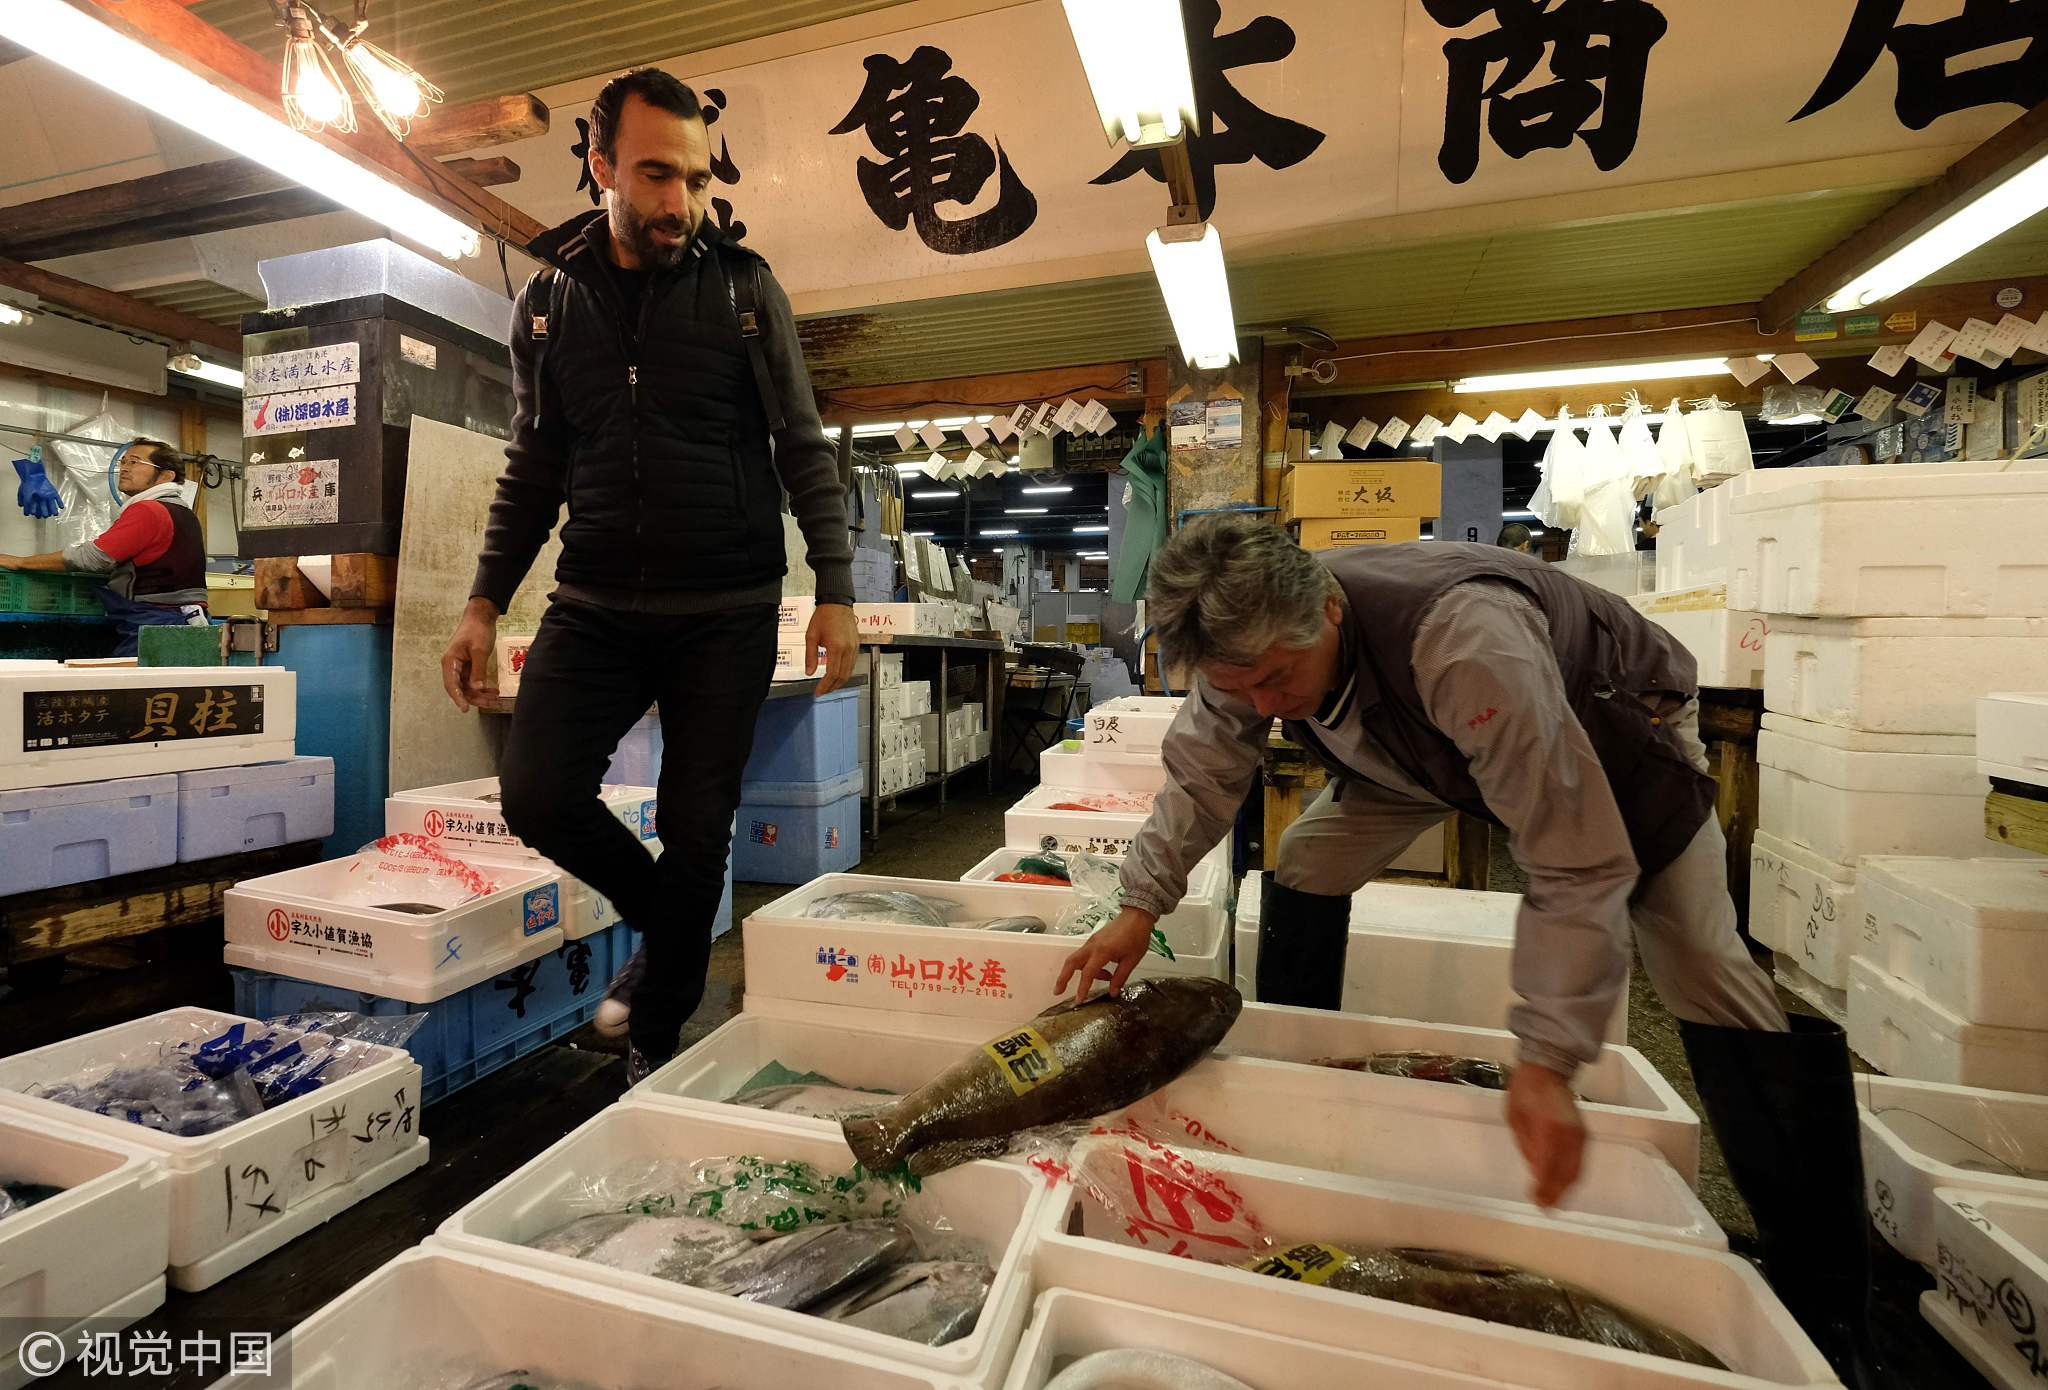 Says the fish. Рыбалка в Токио. Токио фишинг.